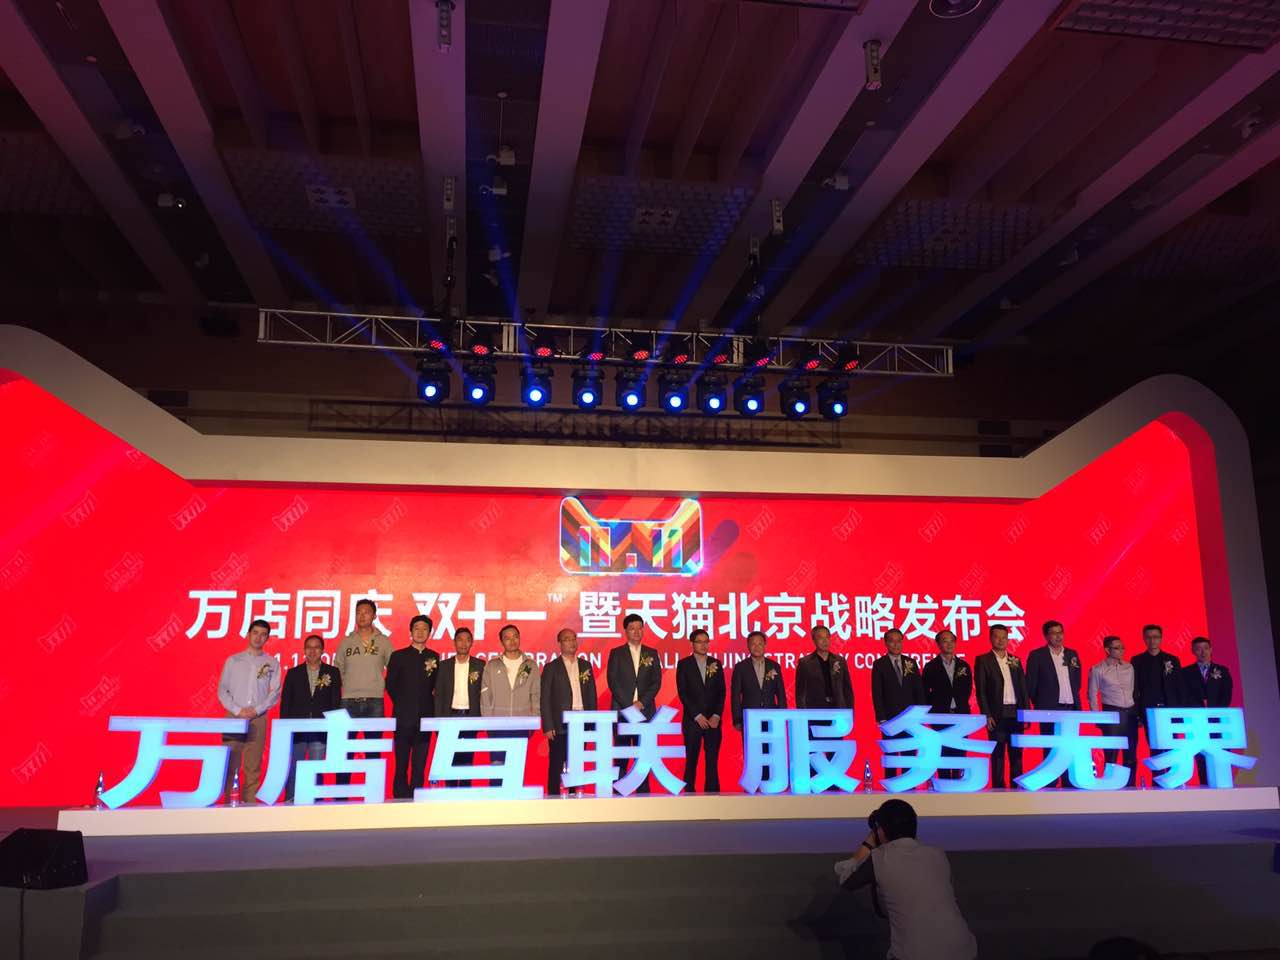 天猫宣布战略不设上限投入北京市场